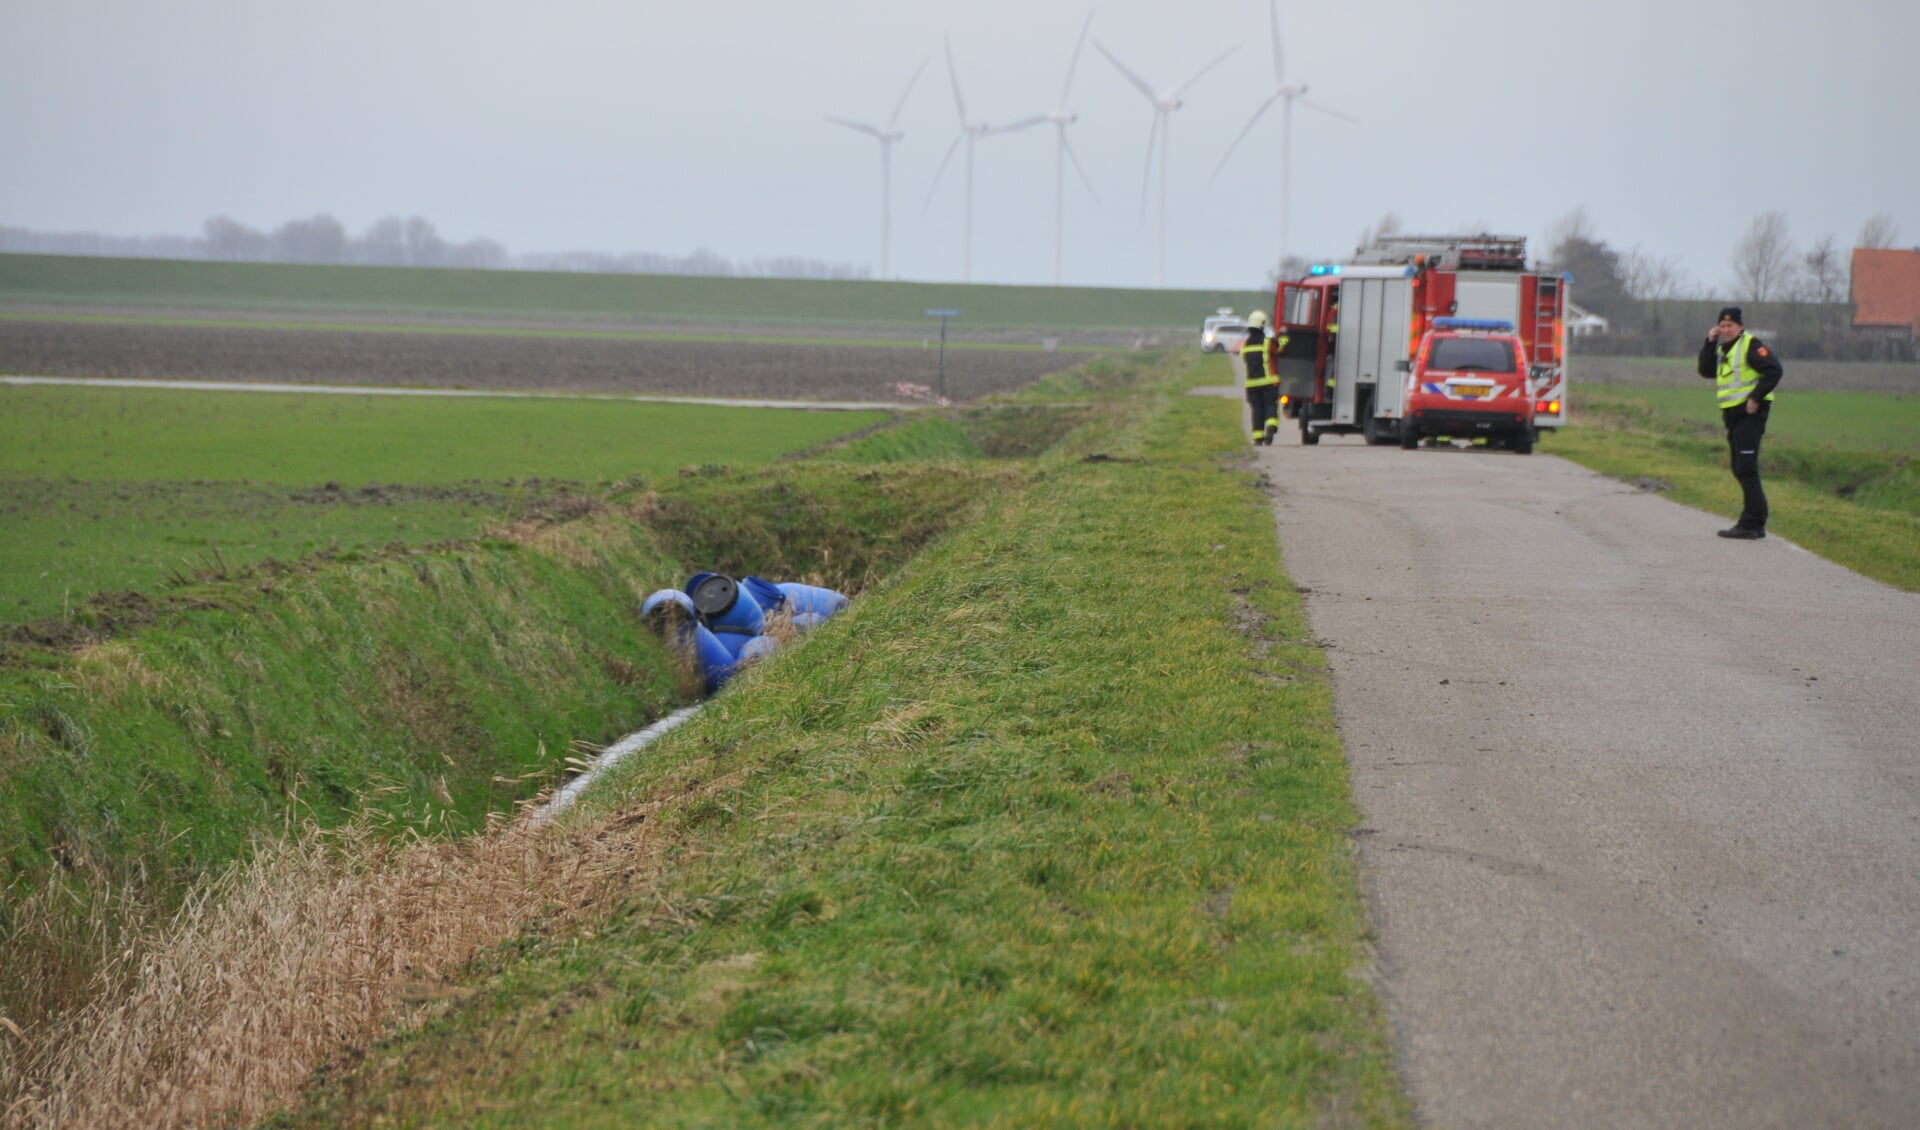 Aan de Oudeweg, in de polder bij Sint Philipsland, zijn blauwe vaten gevonden. De brandweer doet onderzoek naar de inhoud. 